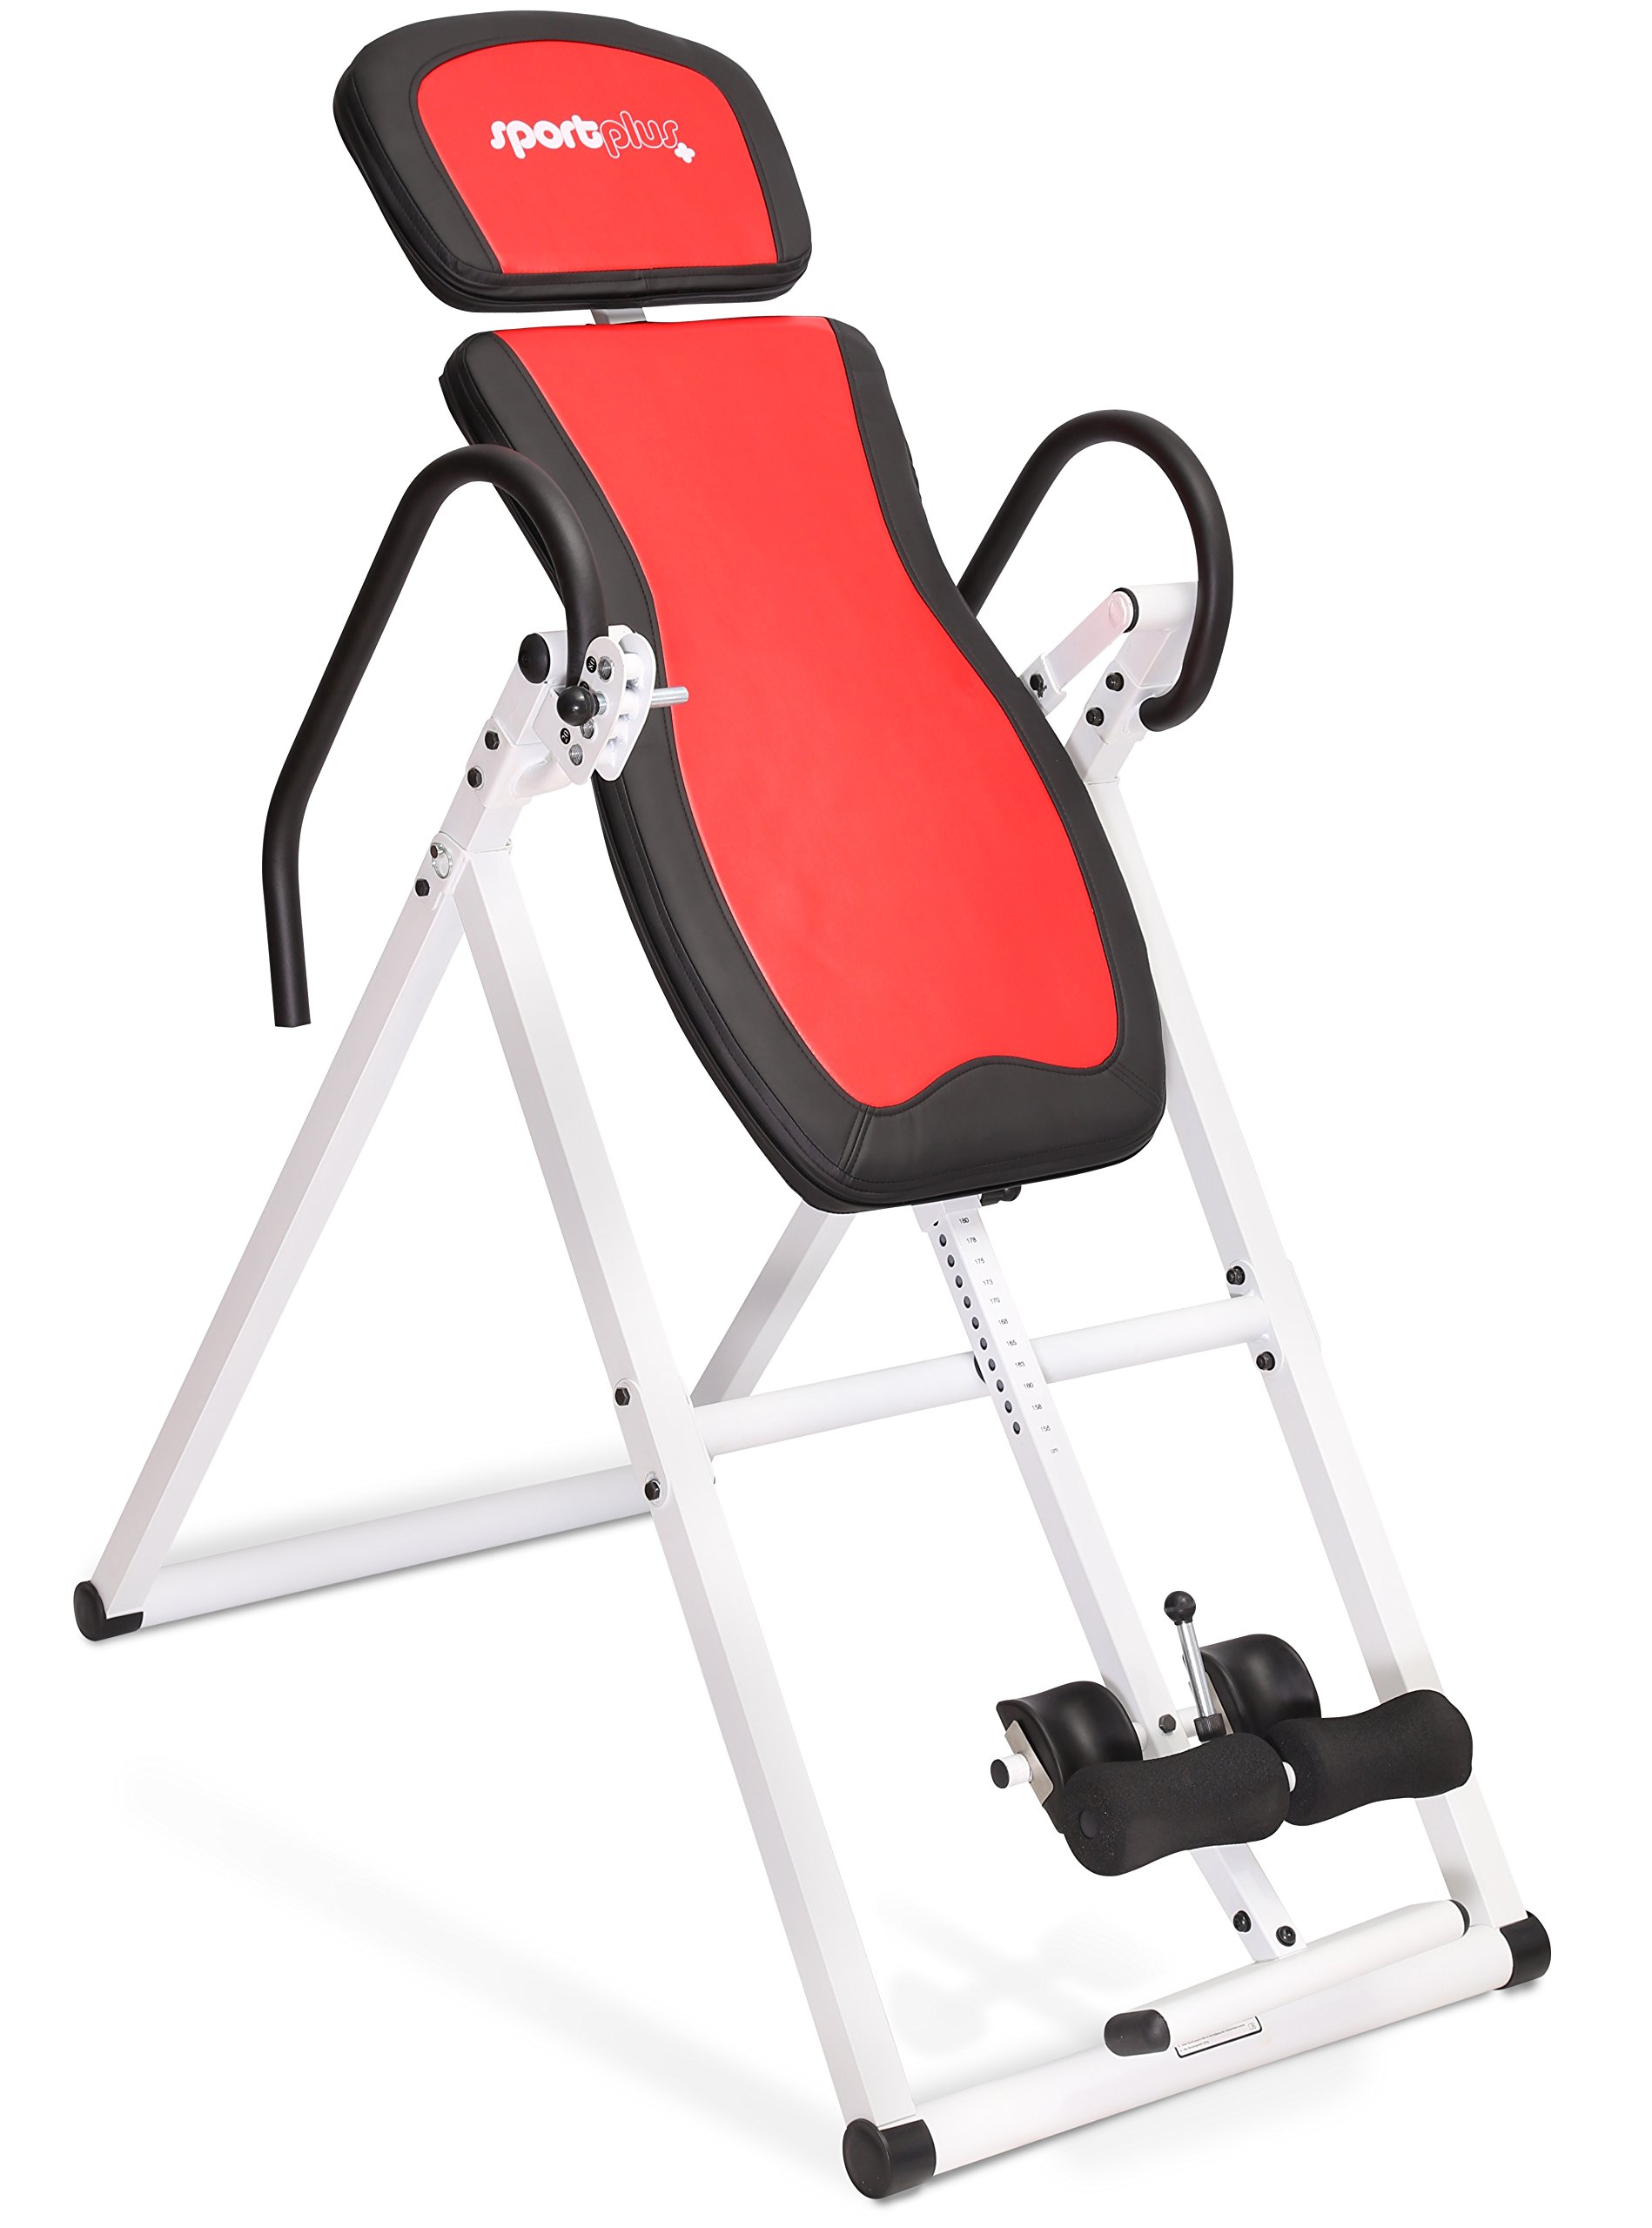 UFLIZOGH Inversionsbank Verstellbar Schwerkrafttrainer mit Schutzgürtel Nutzergewicht bis 150 kg Klappbar Inversion Table Streckbank Rückendehner zur Schmerzlinderung 